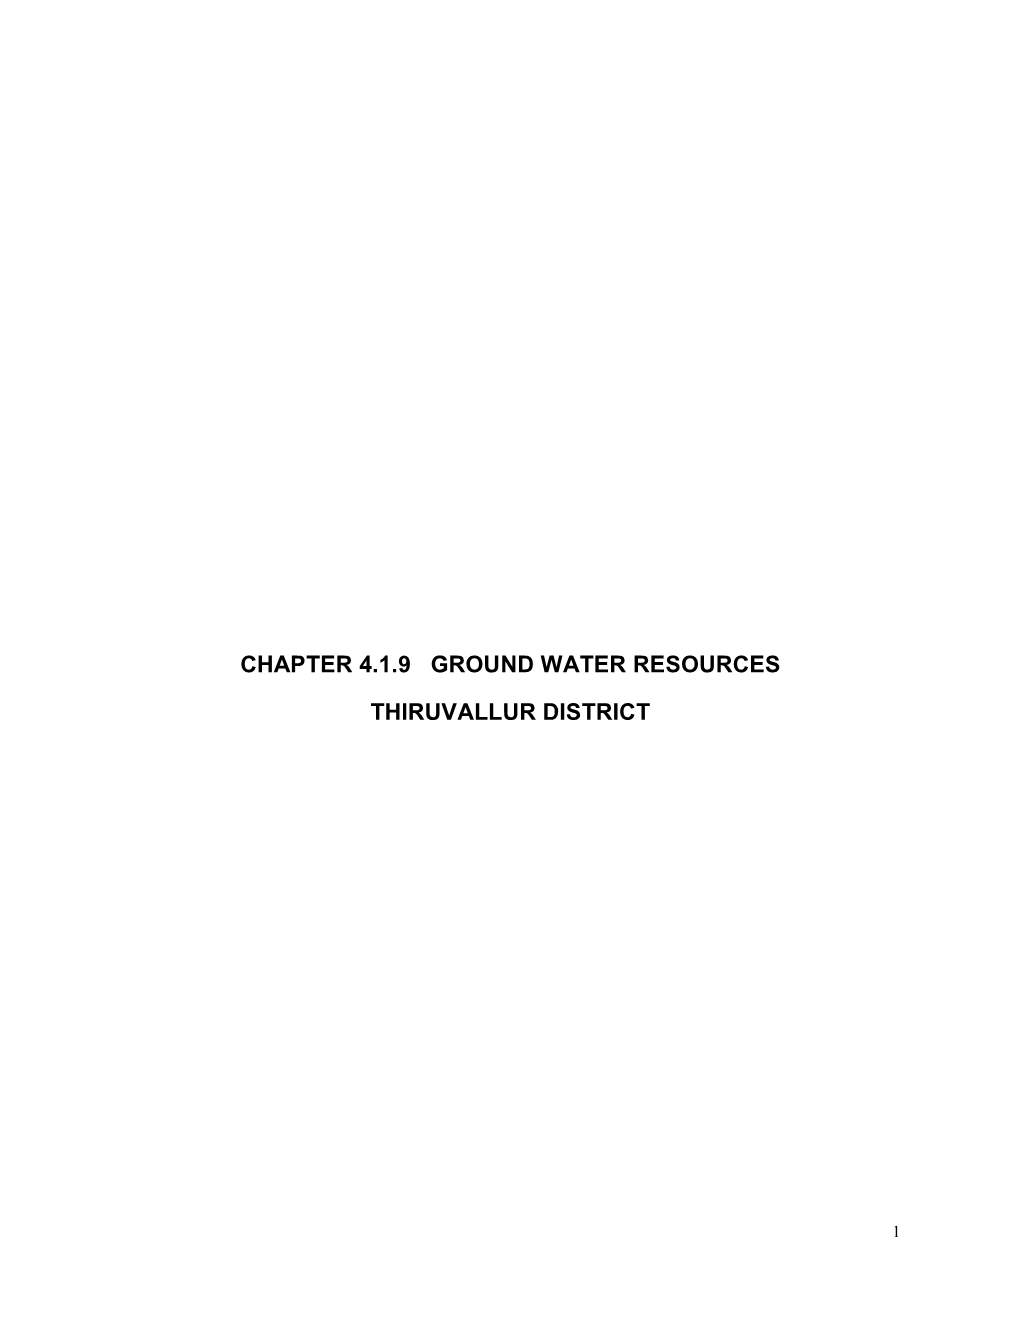 Chapter 4.1.9 Ground Water Resources Thiruvallur District